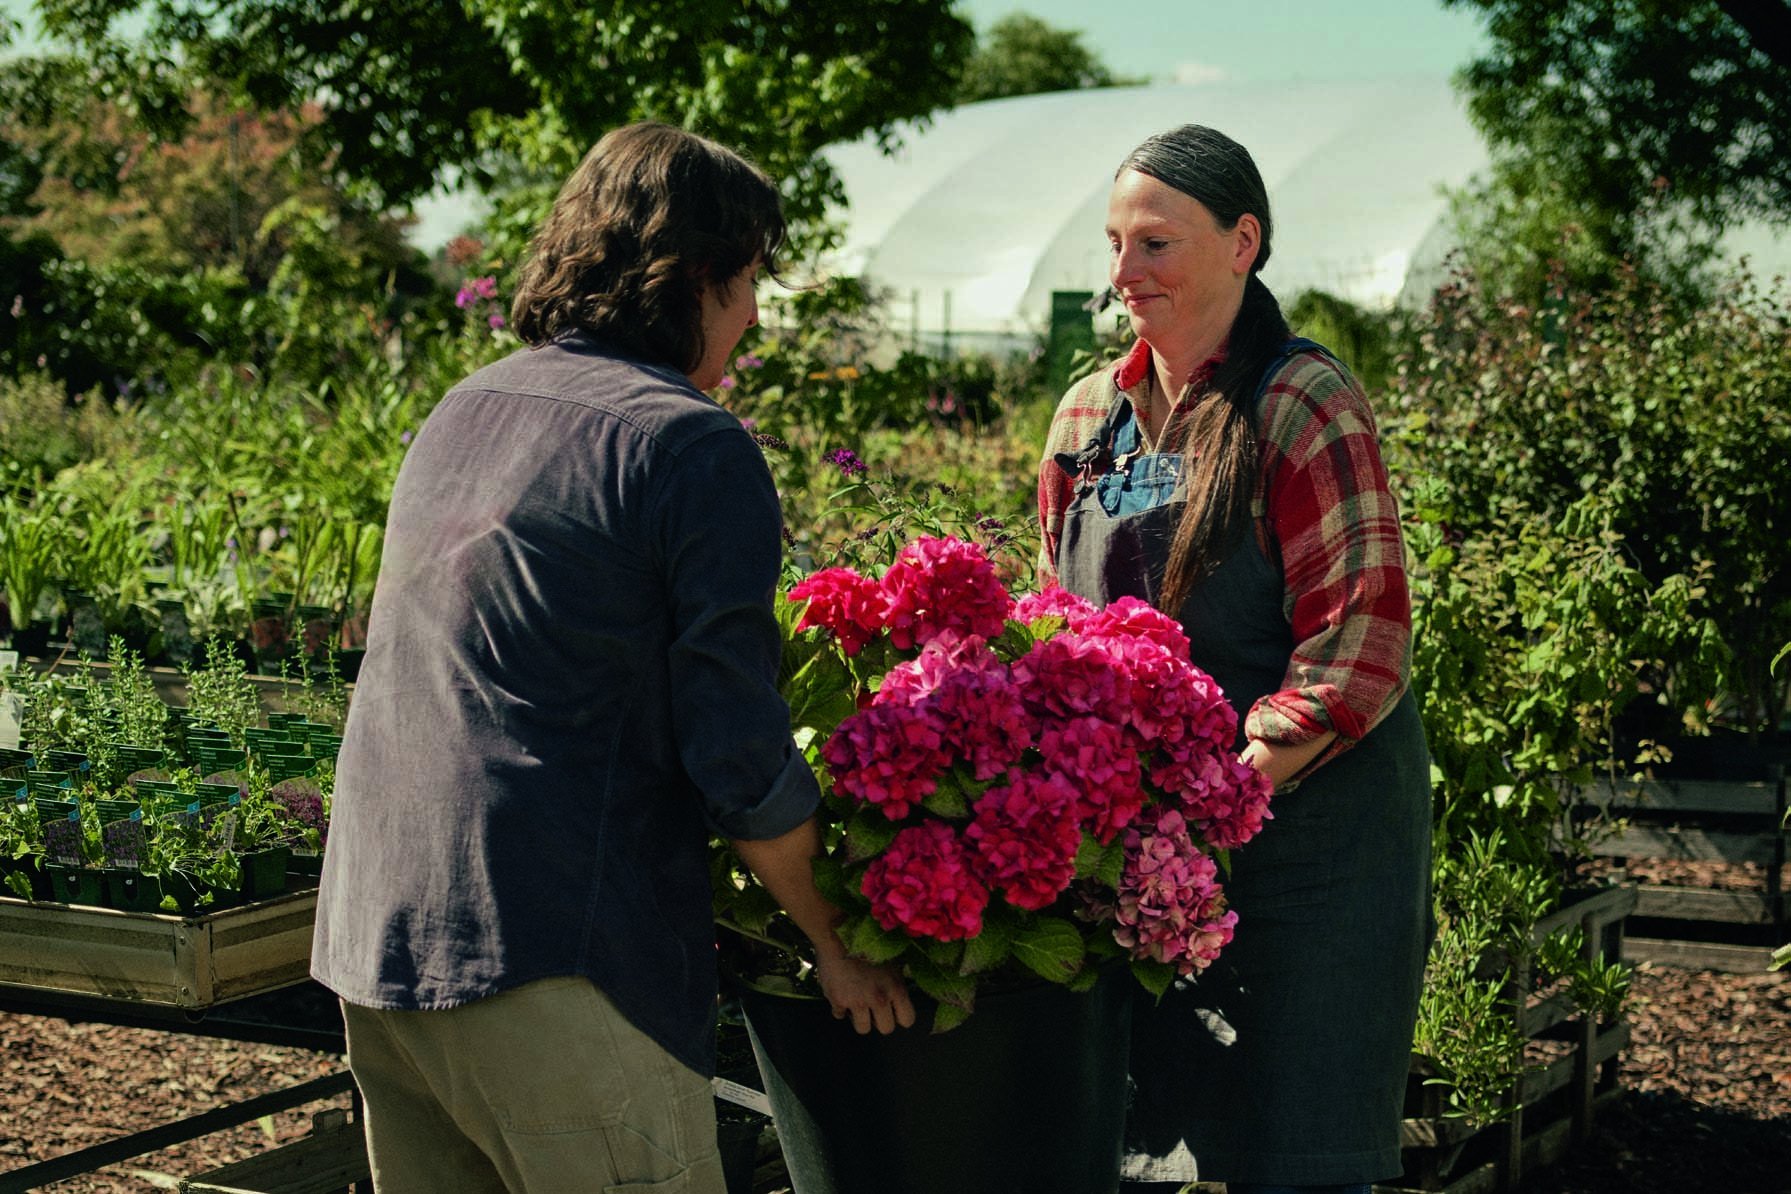 Ein Bild aus dem DRV-Werbespot "Reha hat ein Zuhause". Ein Mann und eine Frau in einer Gärtnerei tragen gemeinsam einen schweren Blumenkübel mit Hortensien.